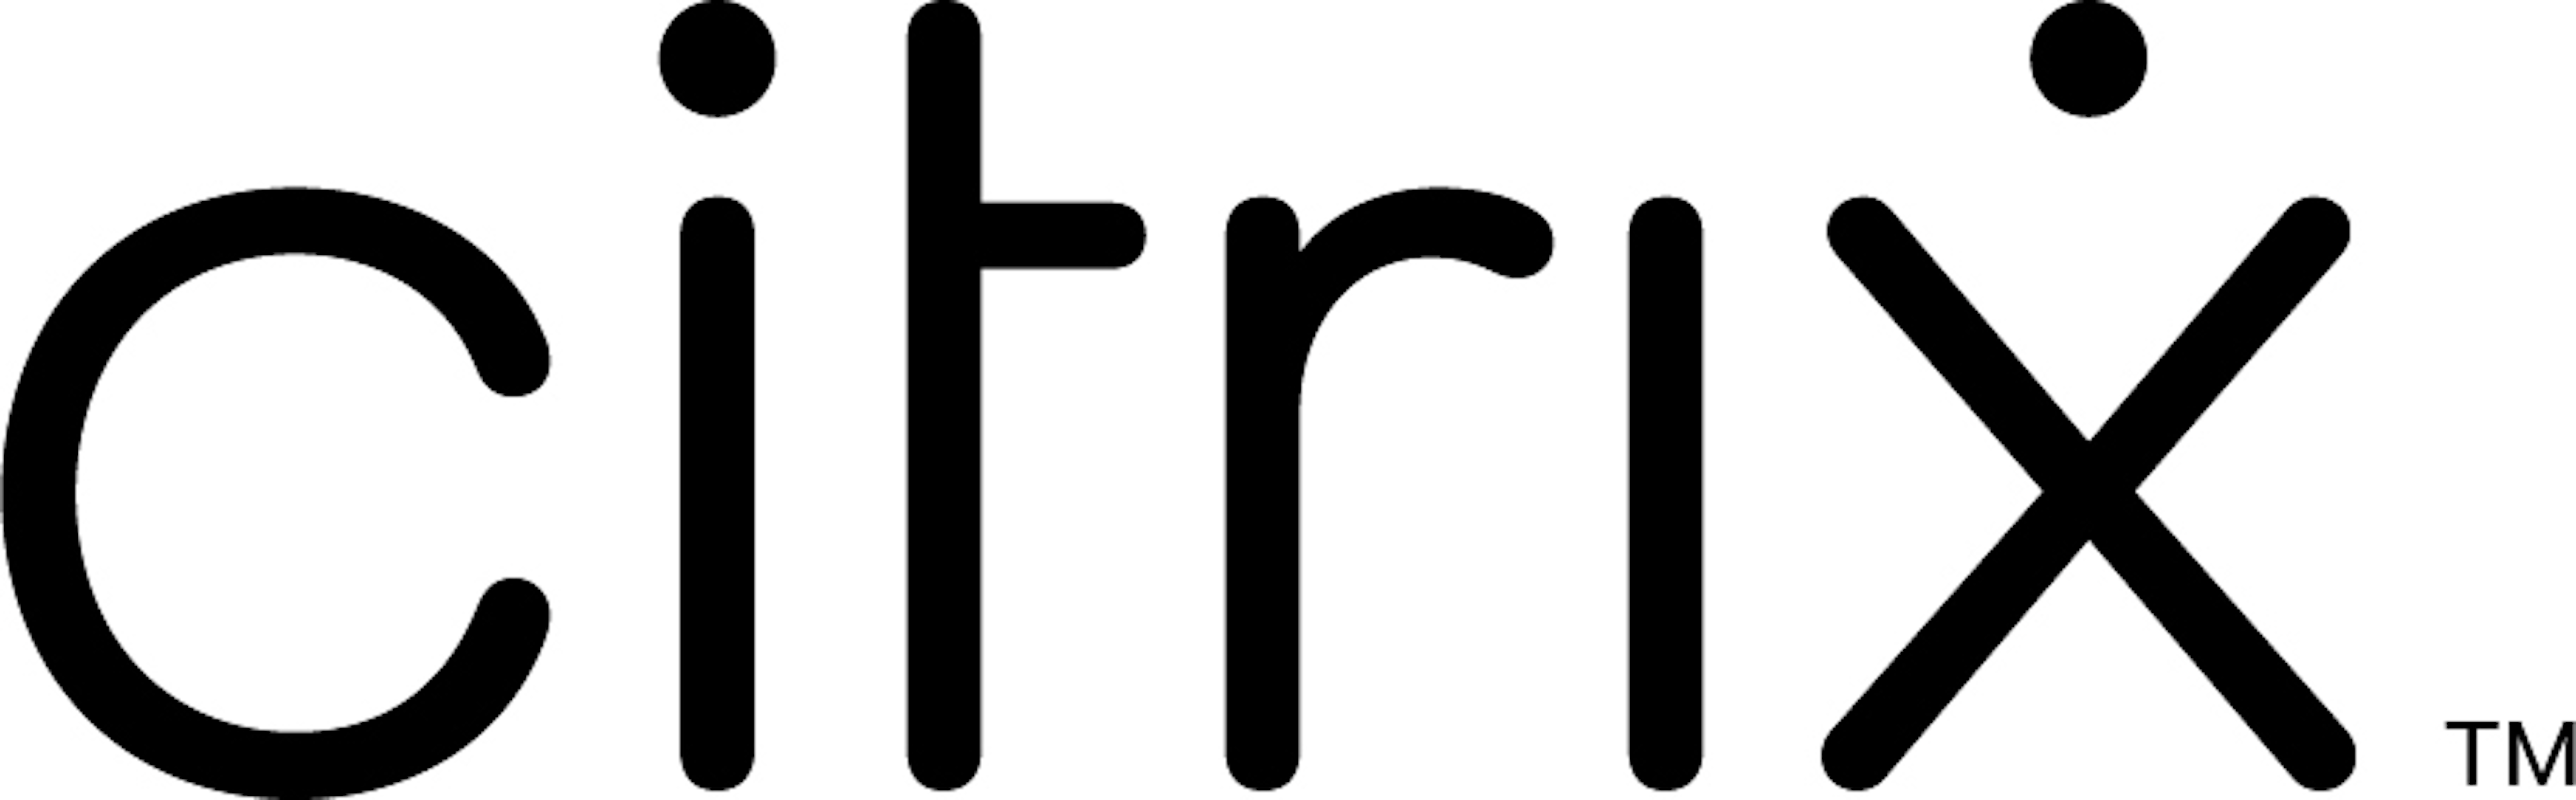 Citrix Workspace Logo